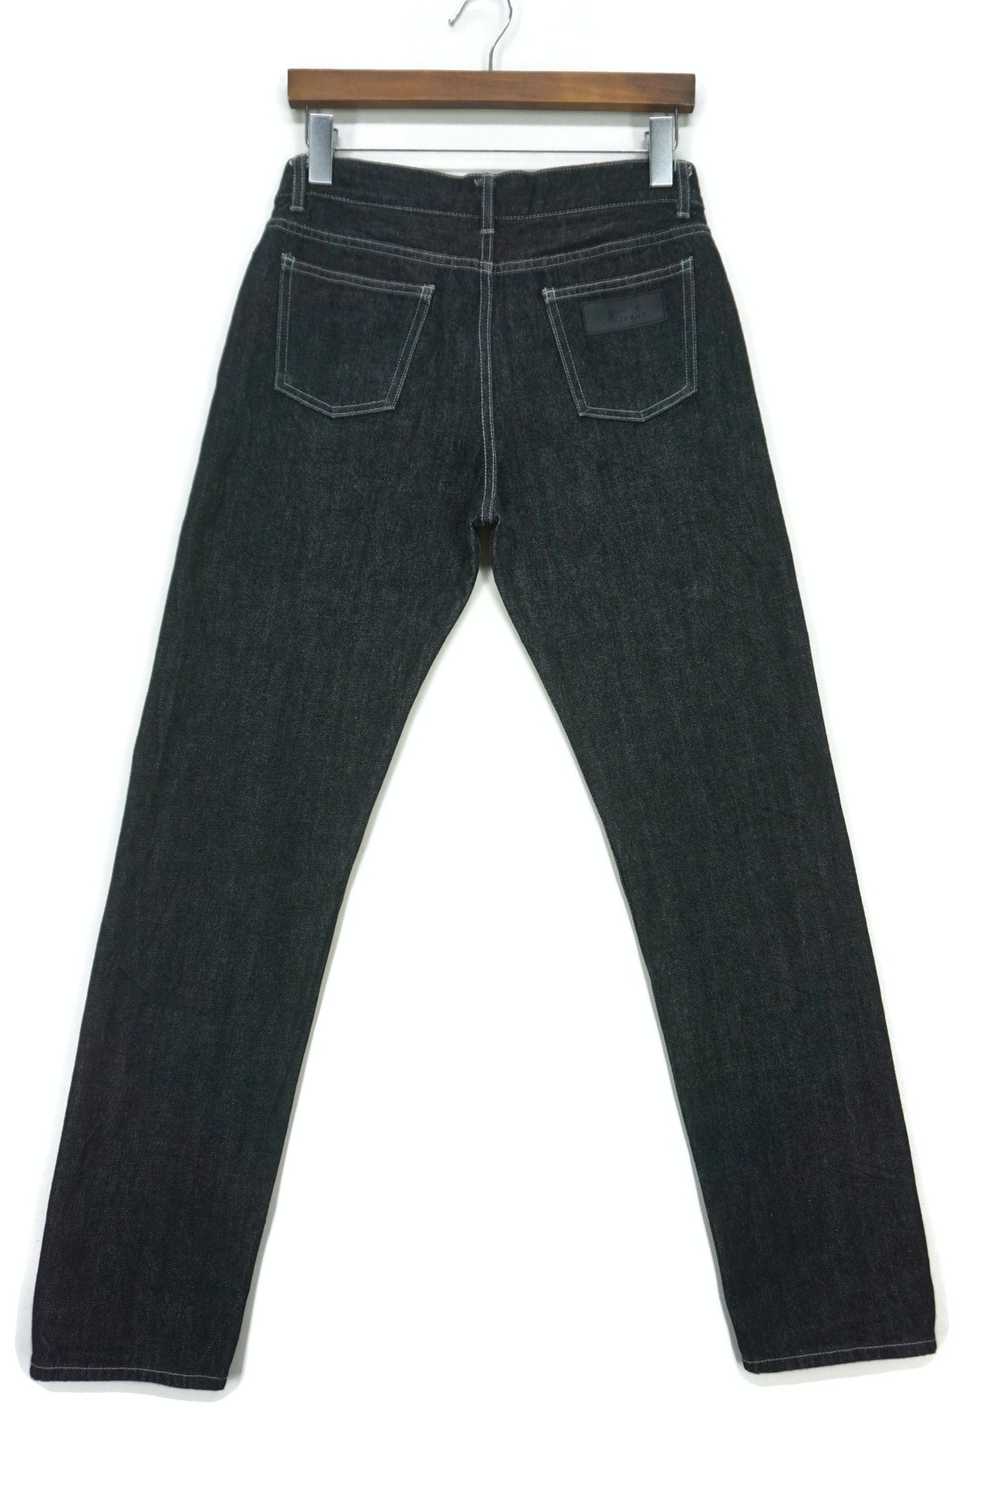 Agnes B. × Designer Selvedge Jeans Straight Leg P… - image 1